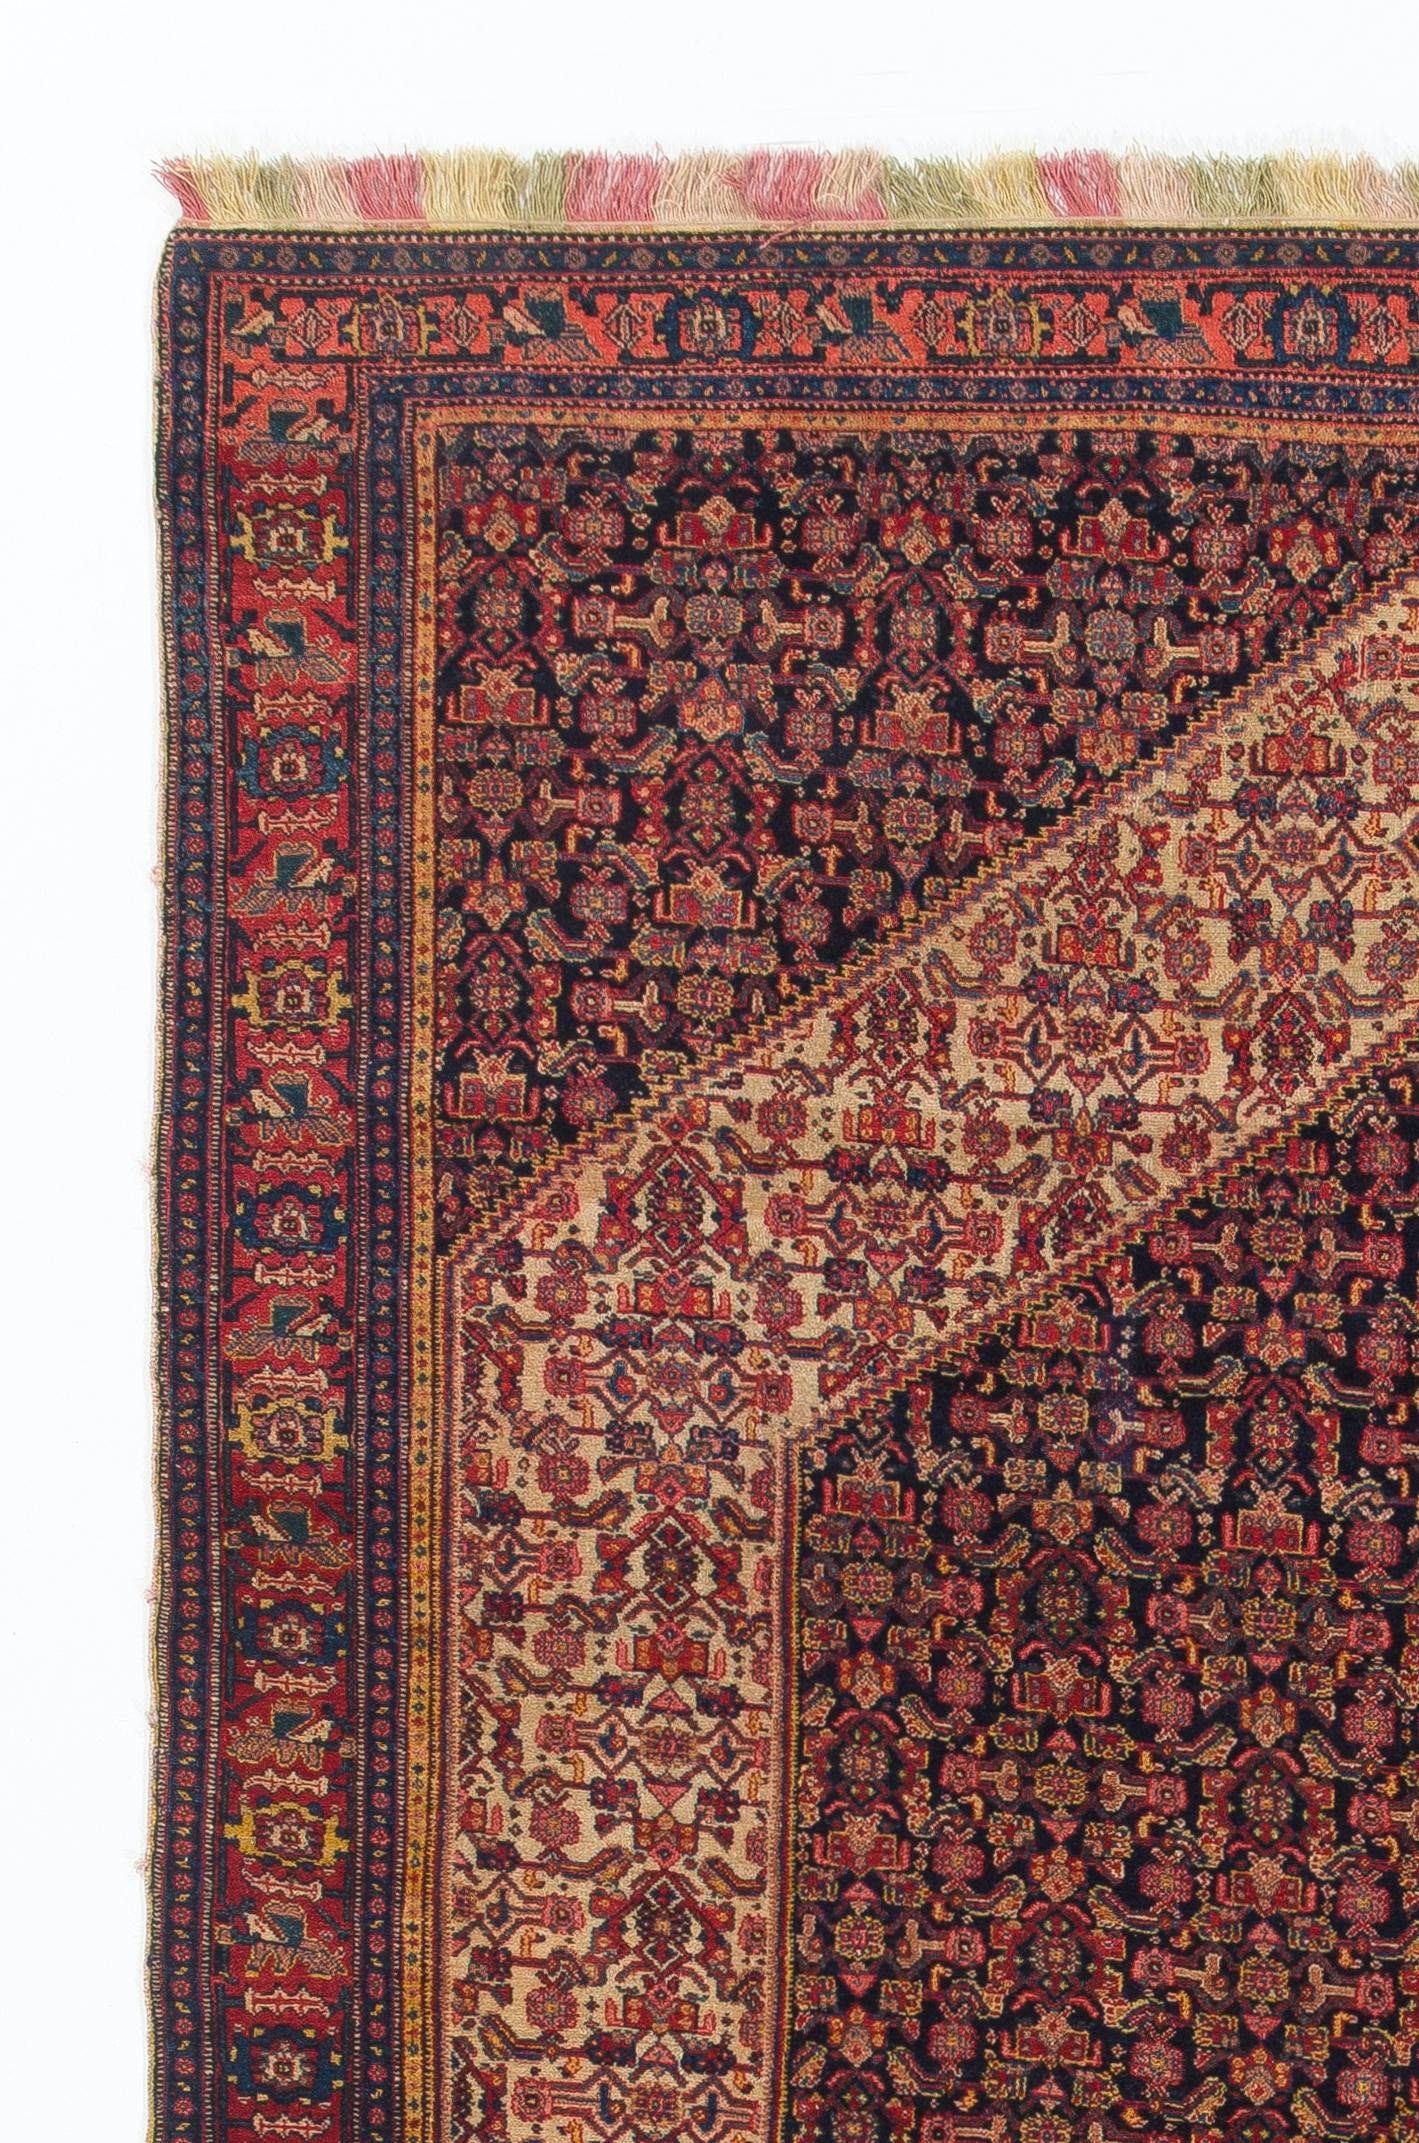 Feiner antiker persischer Senneh-Teppich mit bunten Seidenketten und -schüssen. Sehr guter Zustand. Robust und so sauber wie ein nagelneuer Teppich (professionell tiefgewaschen). Größe: 4,3 x 6,8 ft.